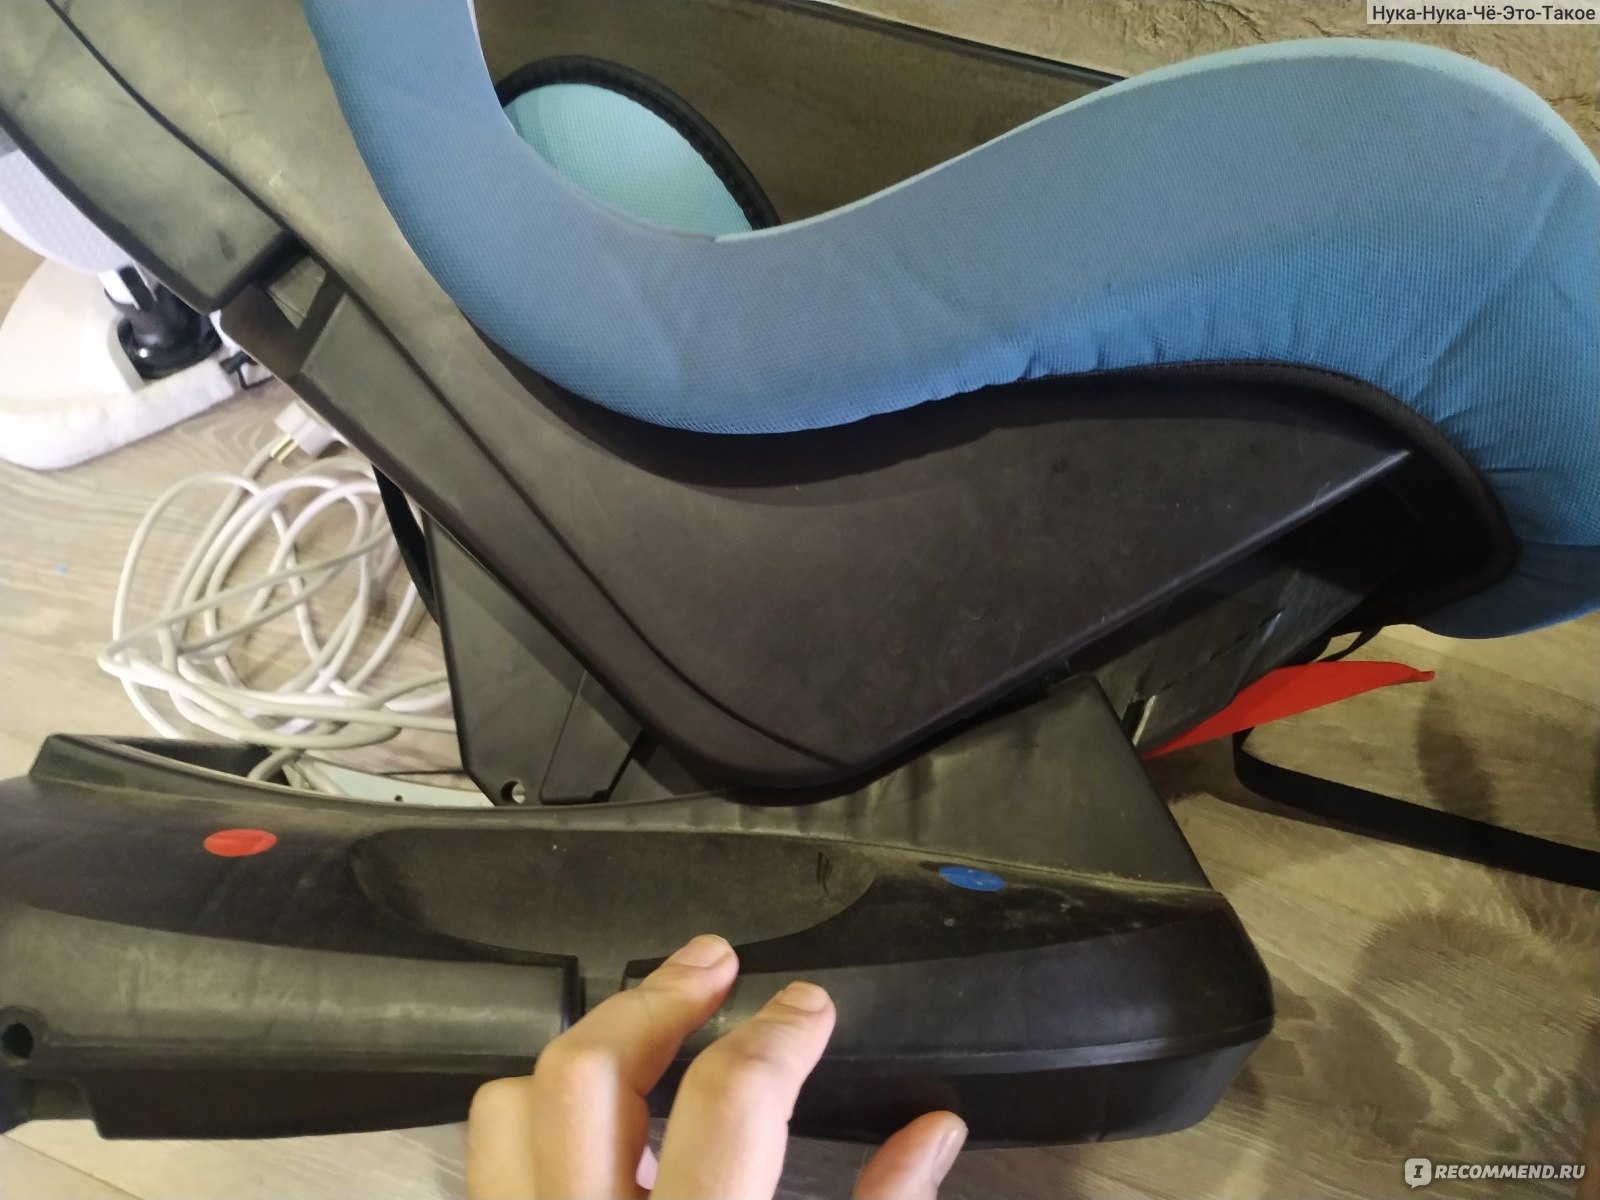 Как установить кресло бебетон норд в машину